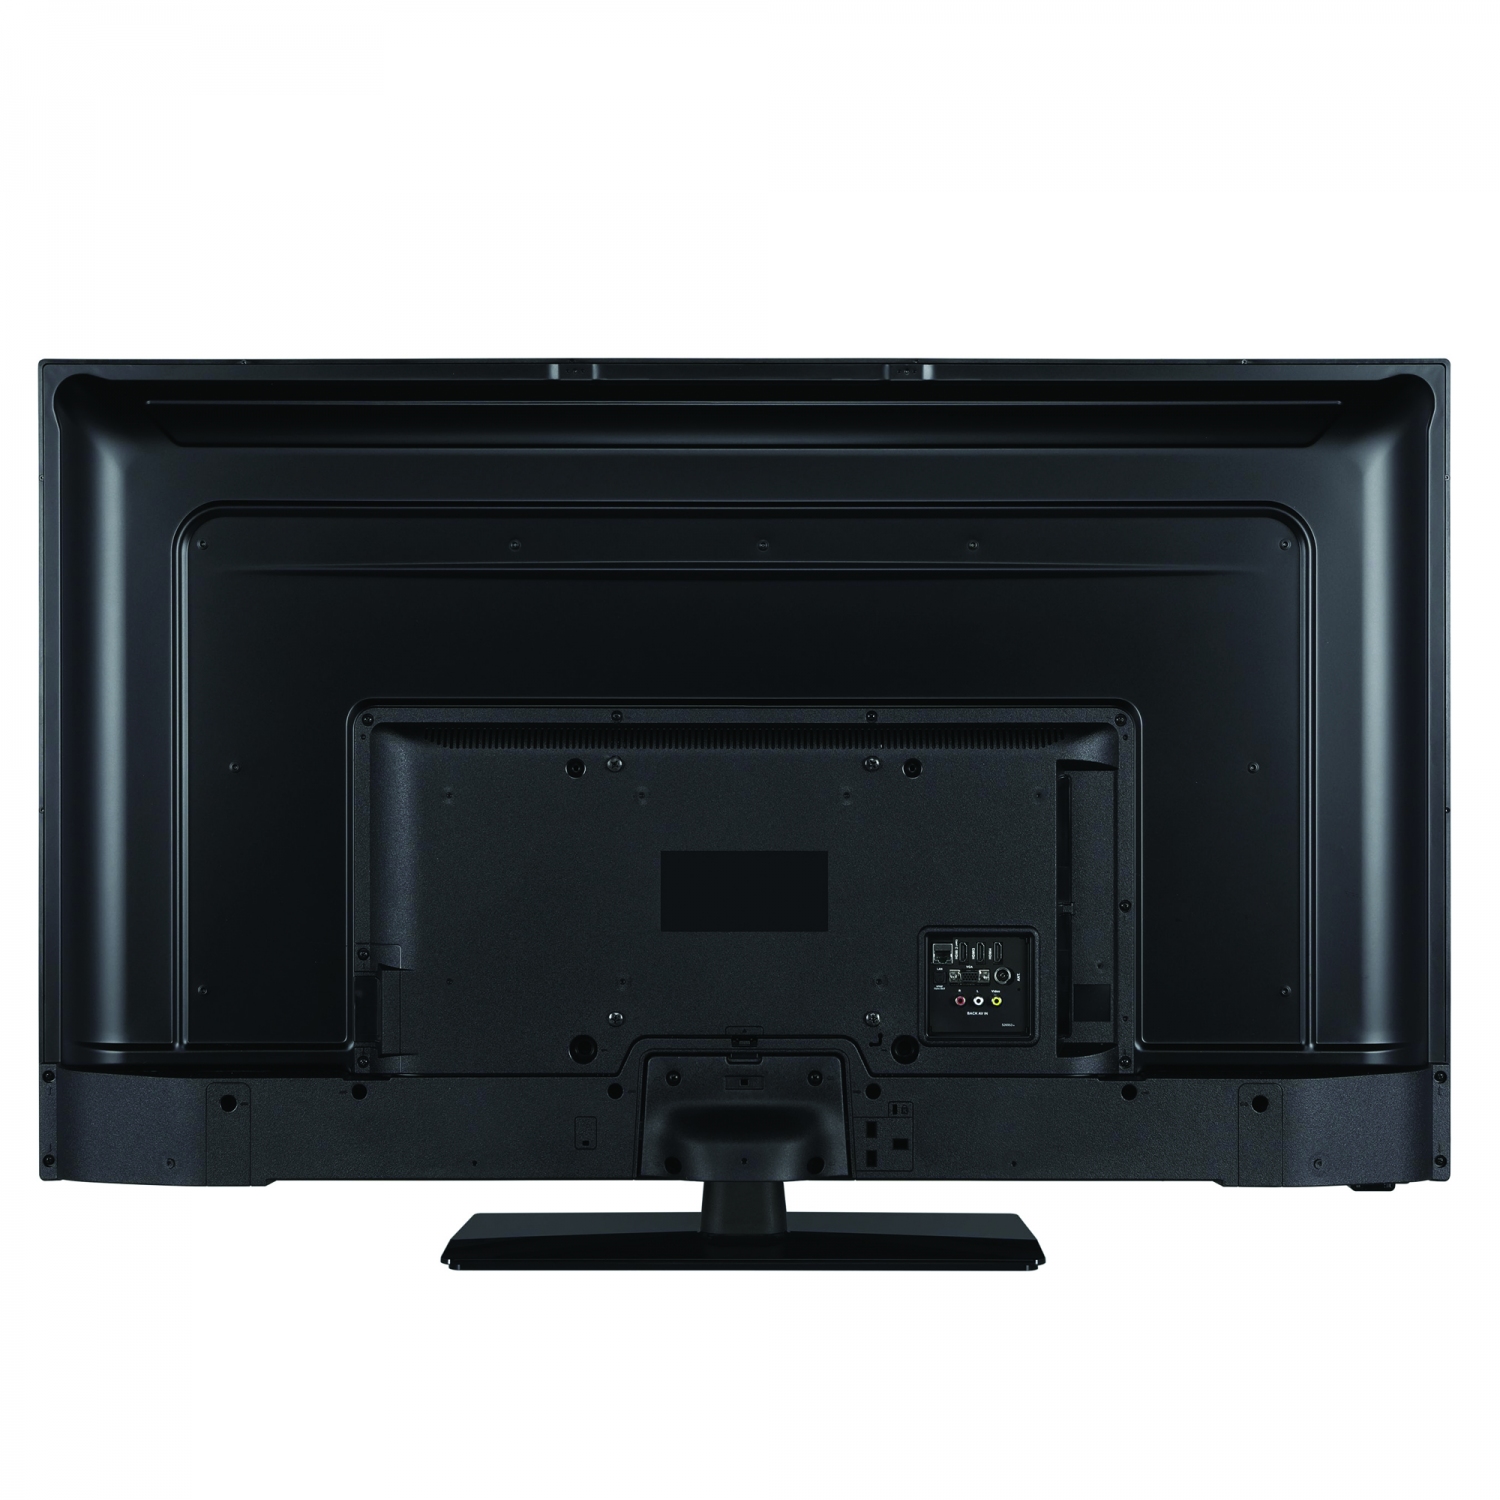 RCA iRB24H3 LED HD TV 24 inch (Triple Tuner, CI+, HDMI, USB